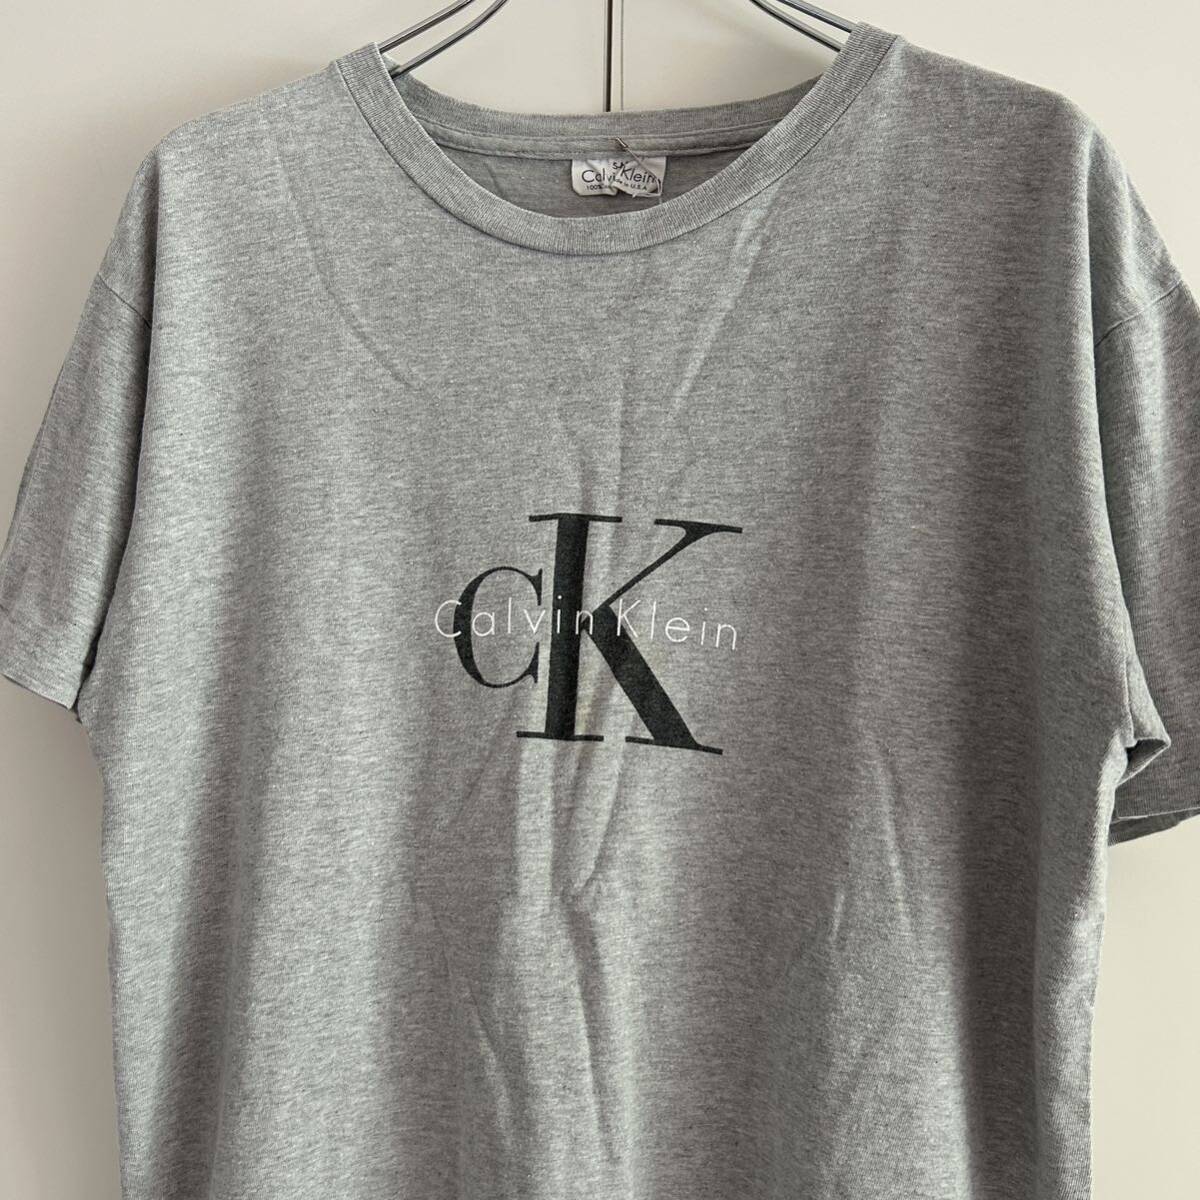 90s Calvin Klein カルバンクライン USA製 ロゴプリントTシャツ S-M 袖裾シングル グレー 企業 センターロゴ 古着の画像1